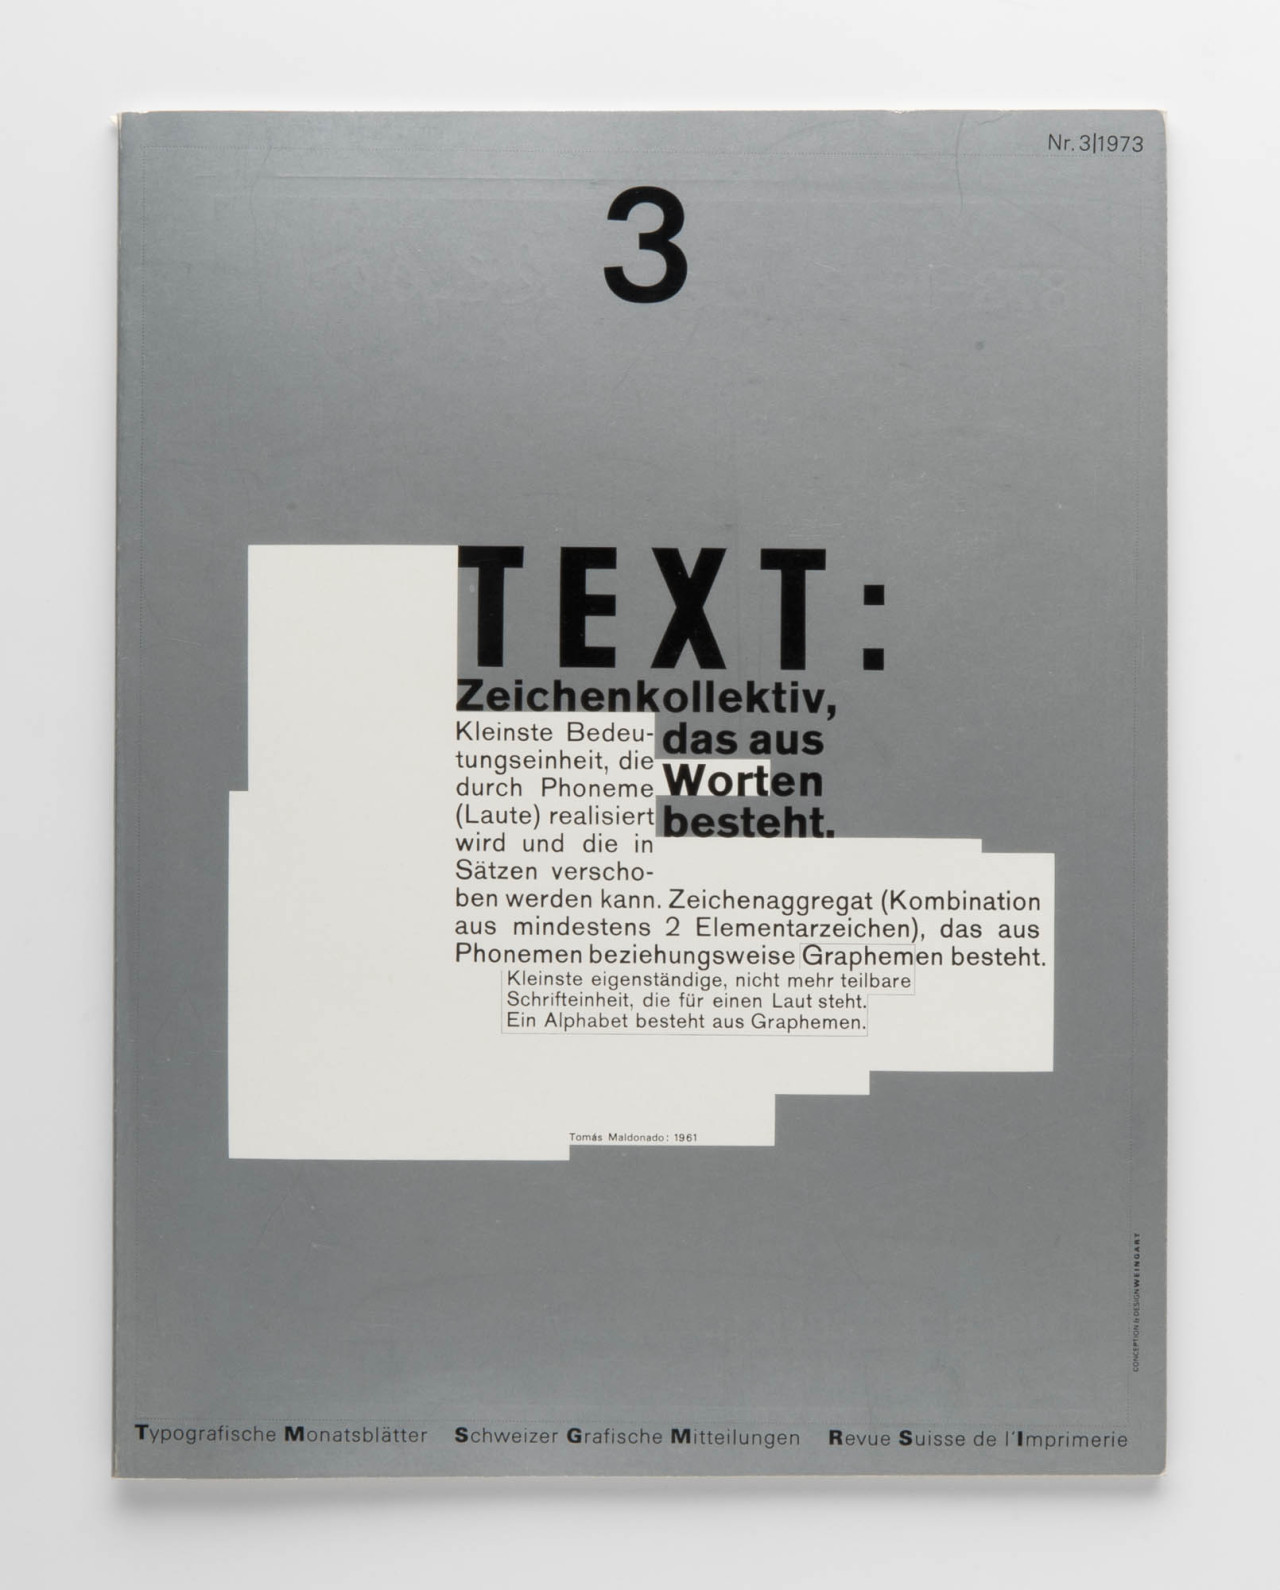 Wolfgang Weingart: Cover design for Typografische Monatsblätter Schweizer Grafische Mitteilungen Revue suisse de l’Imprimerie Nr. 3, 1973